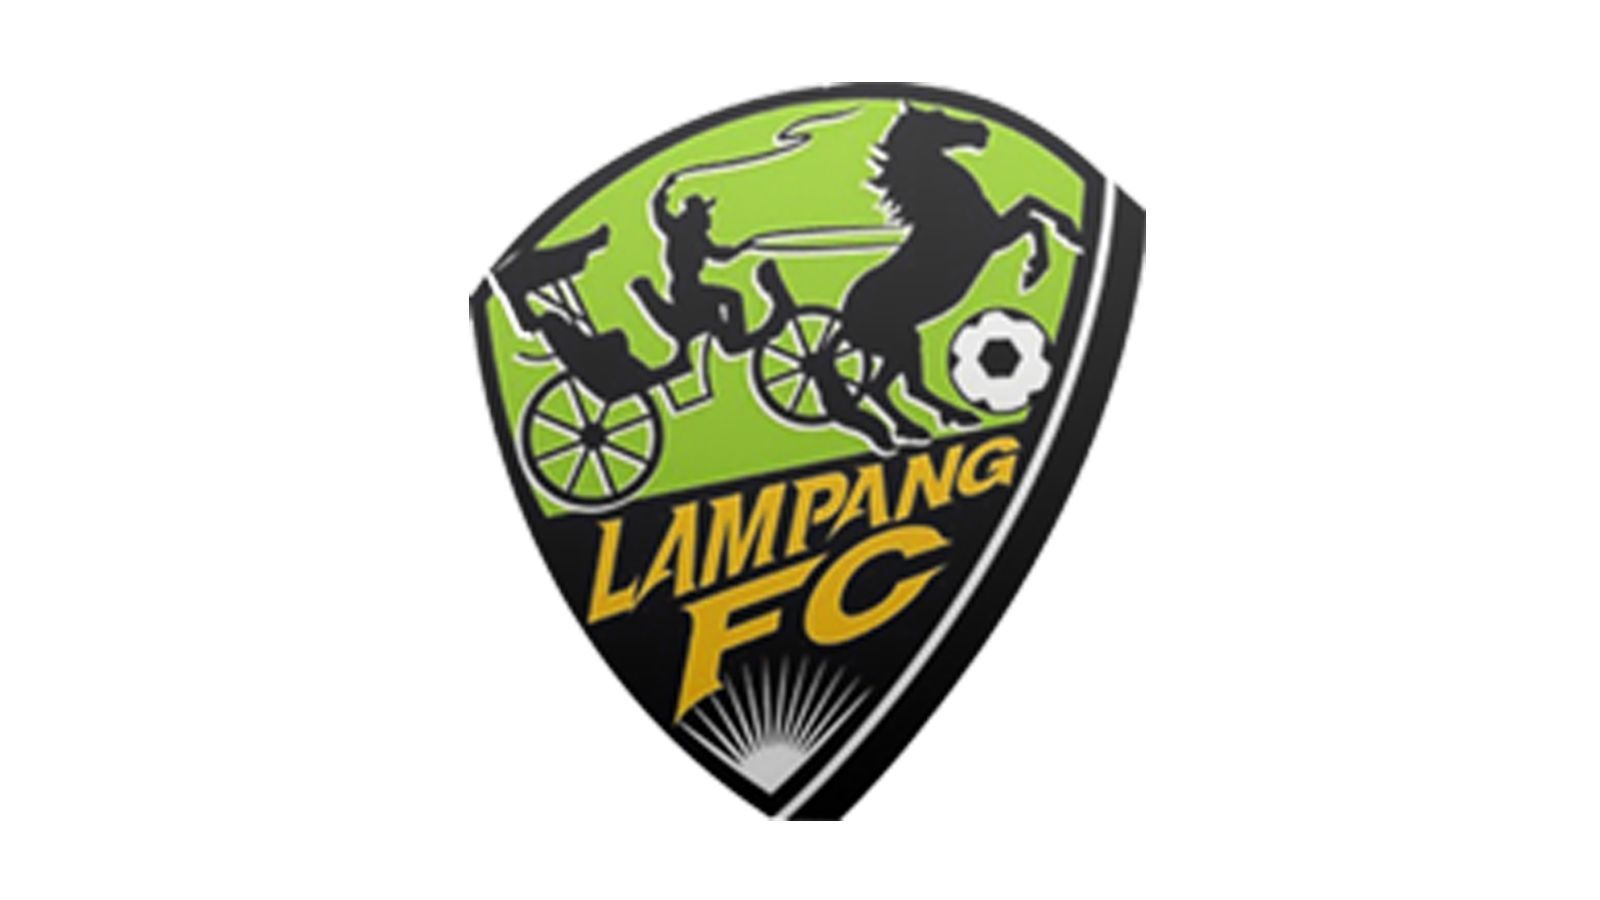 
                <strong>Die hässlichsten Vereinswappen der Welt</strong><br>
                Klub: Lampang FCLand: Thailand
              